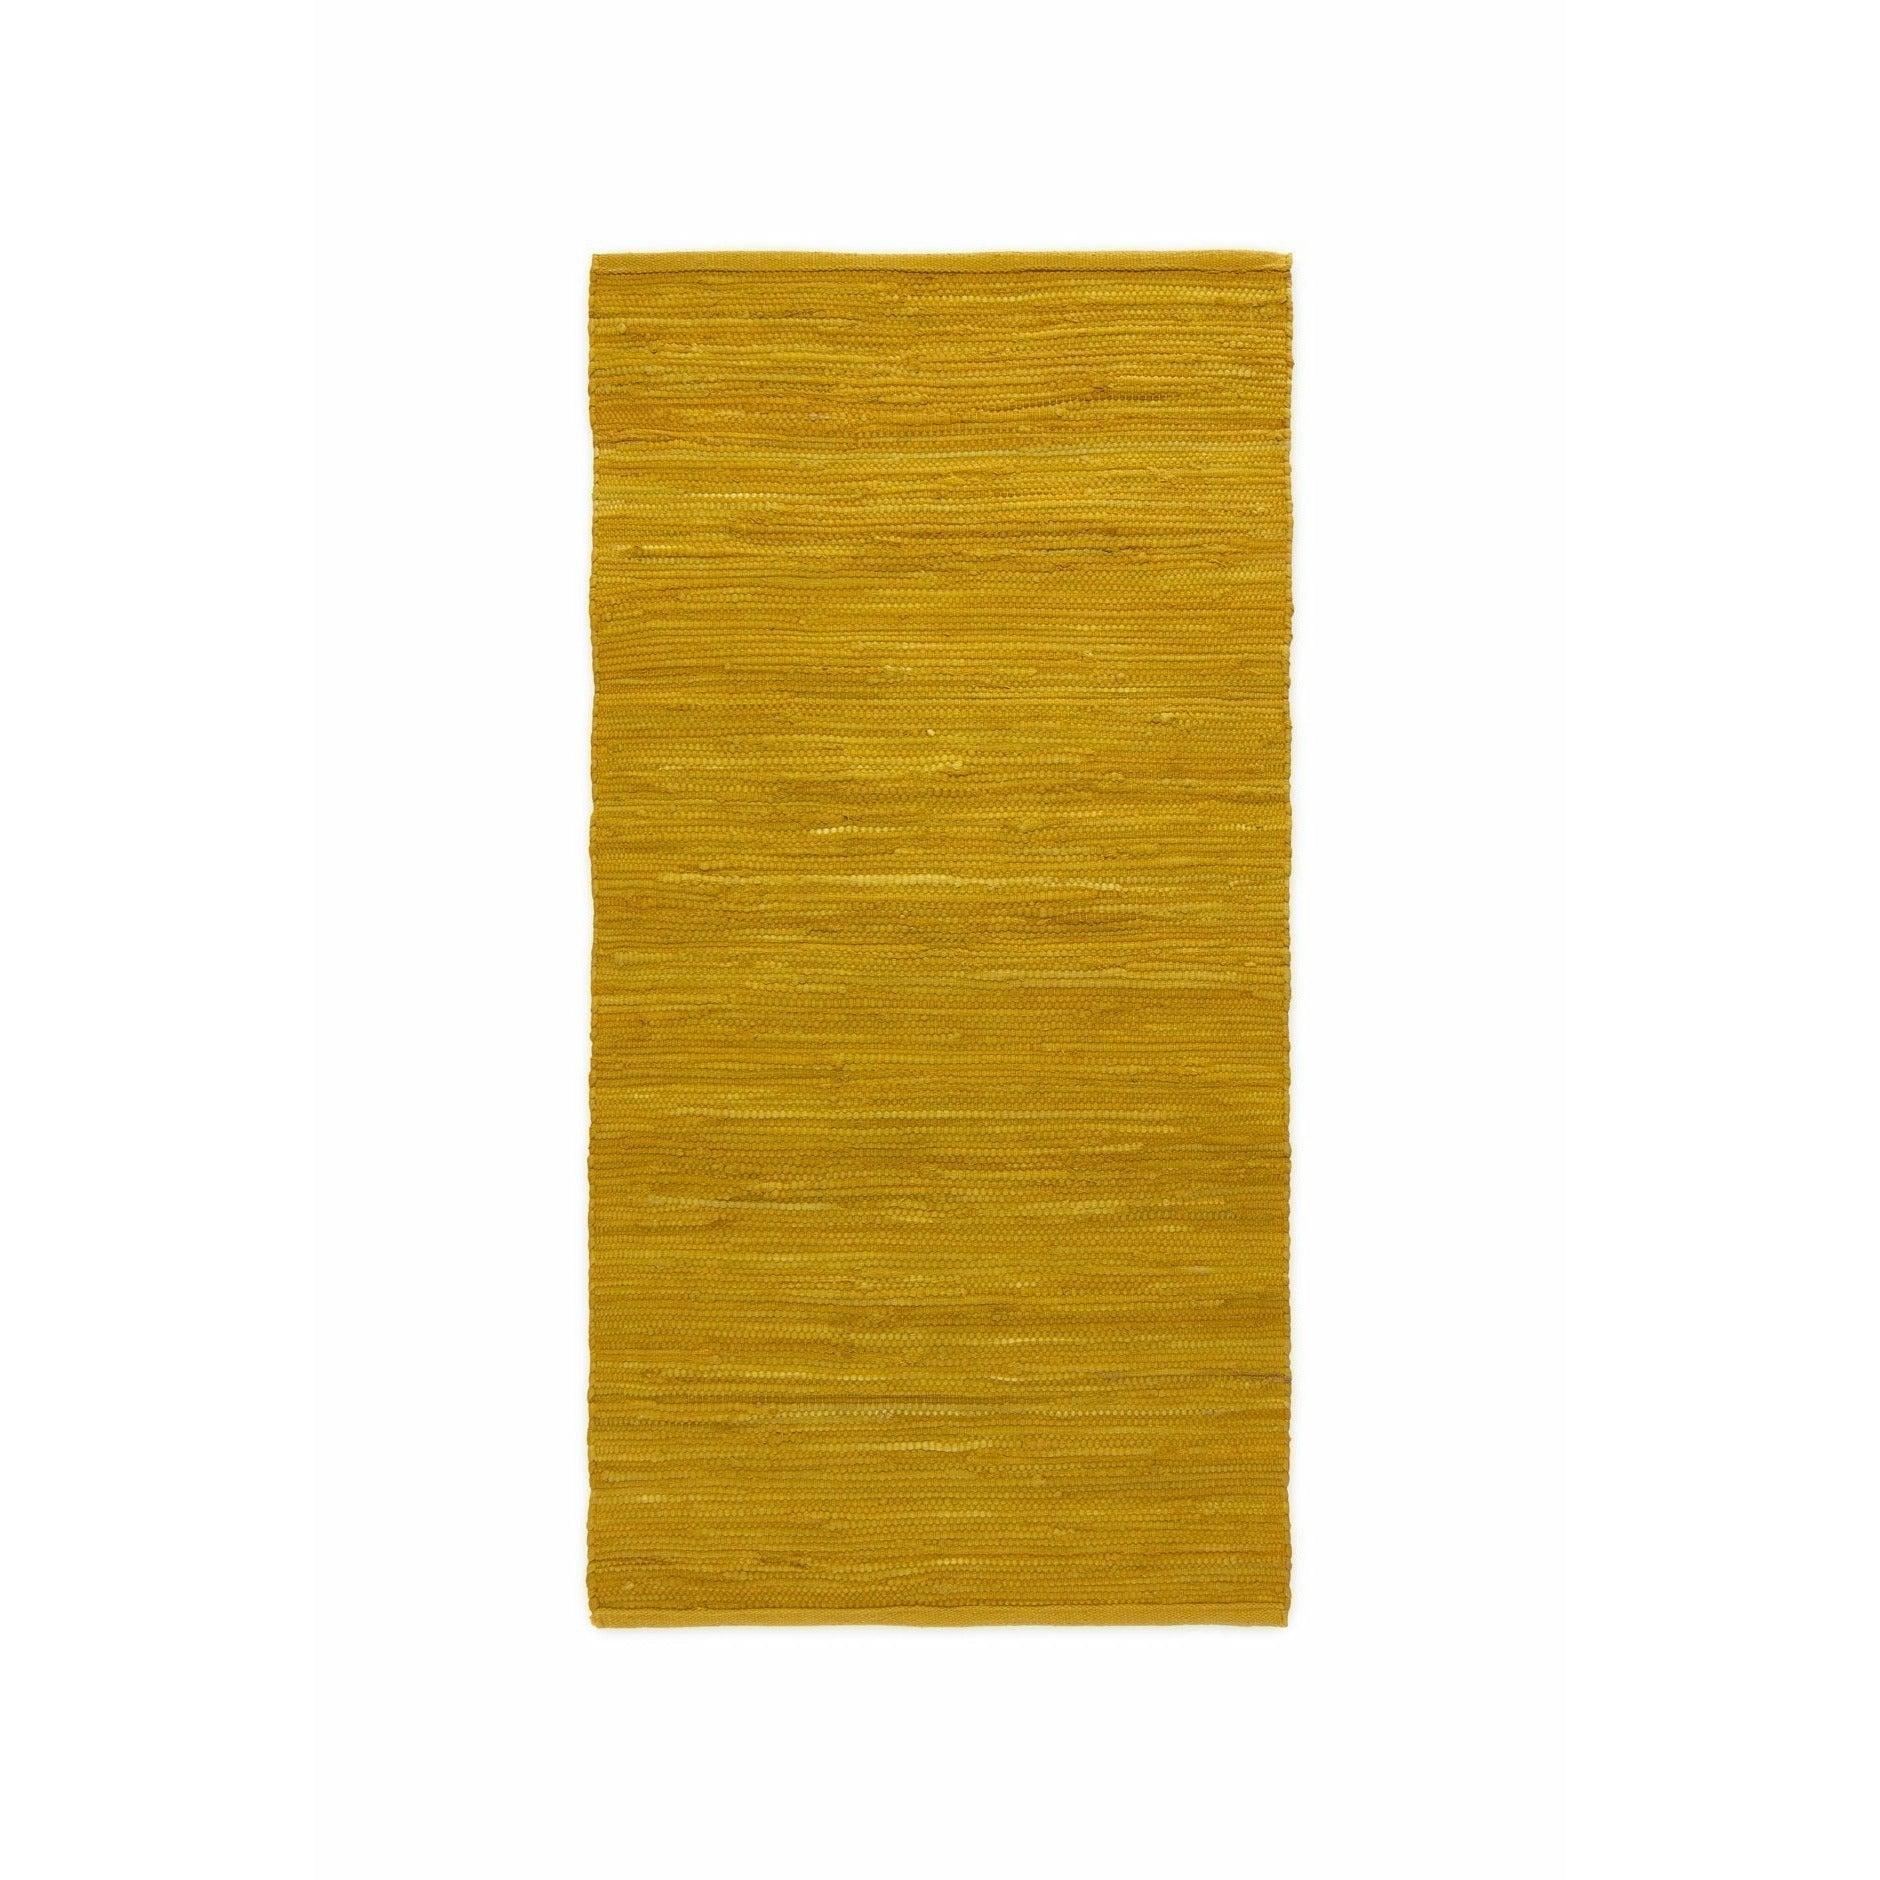 Tappeto di cotone solido ambra brunita, 60 x 90 cm